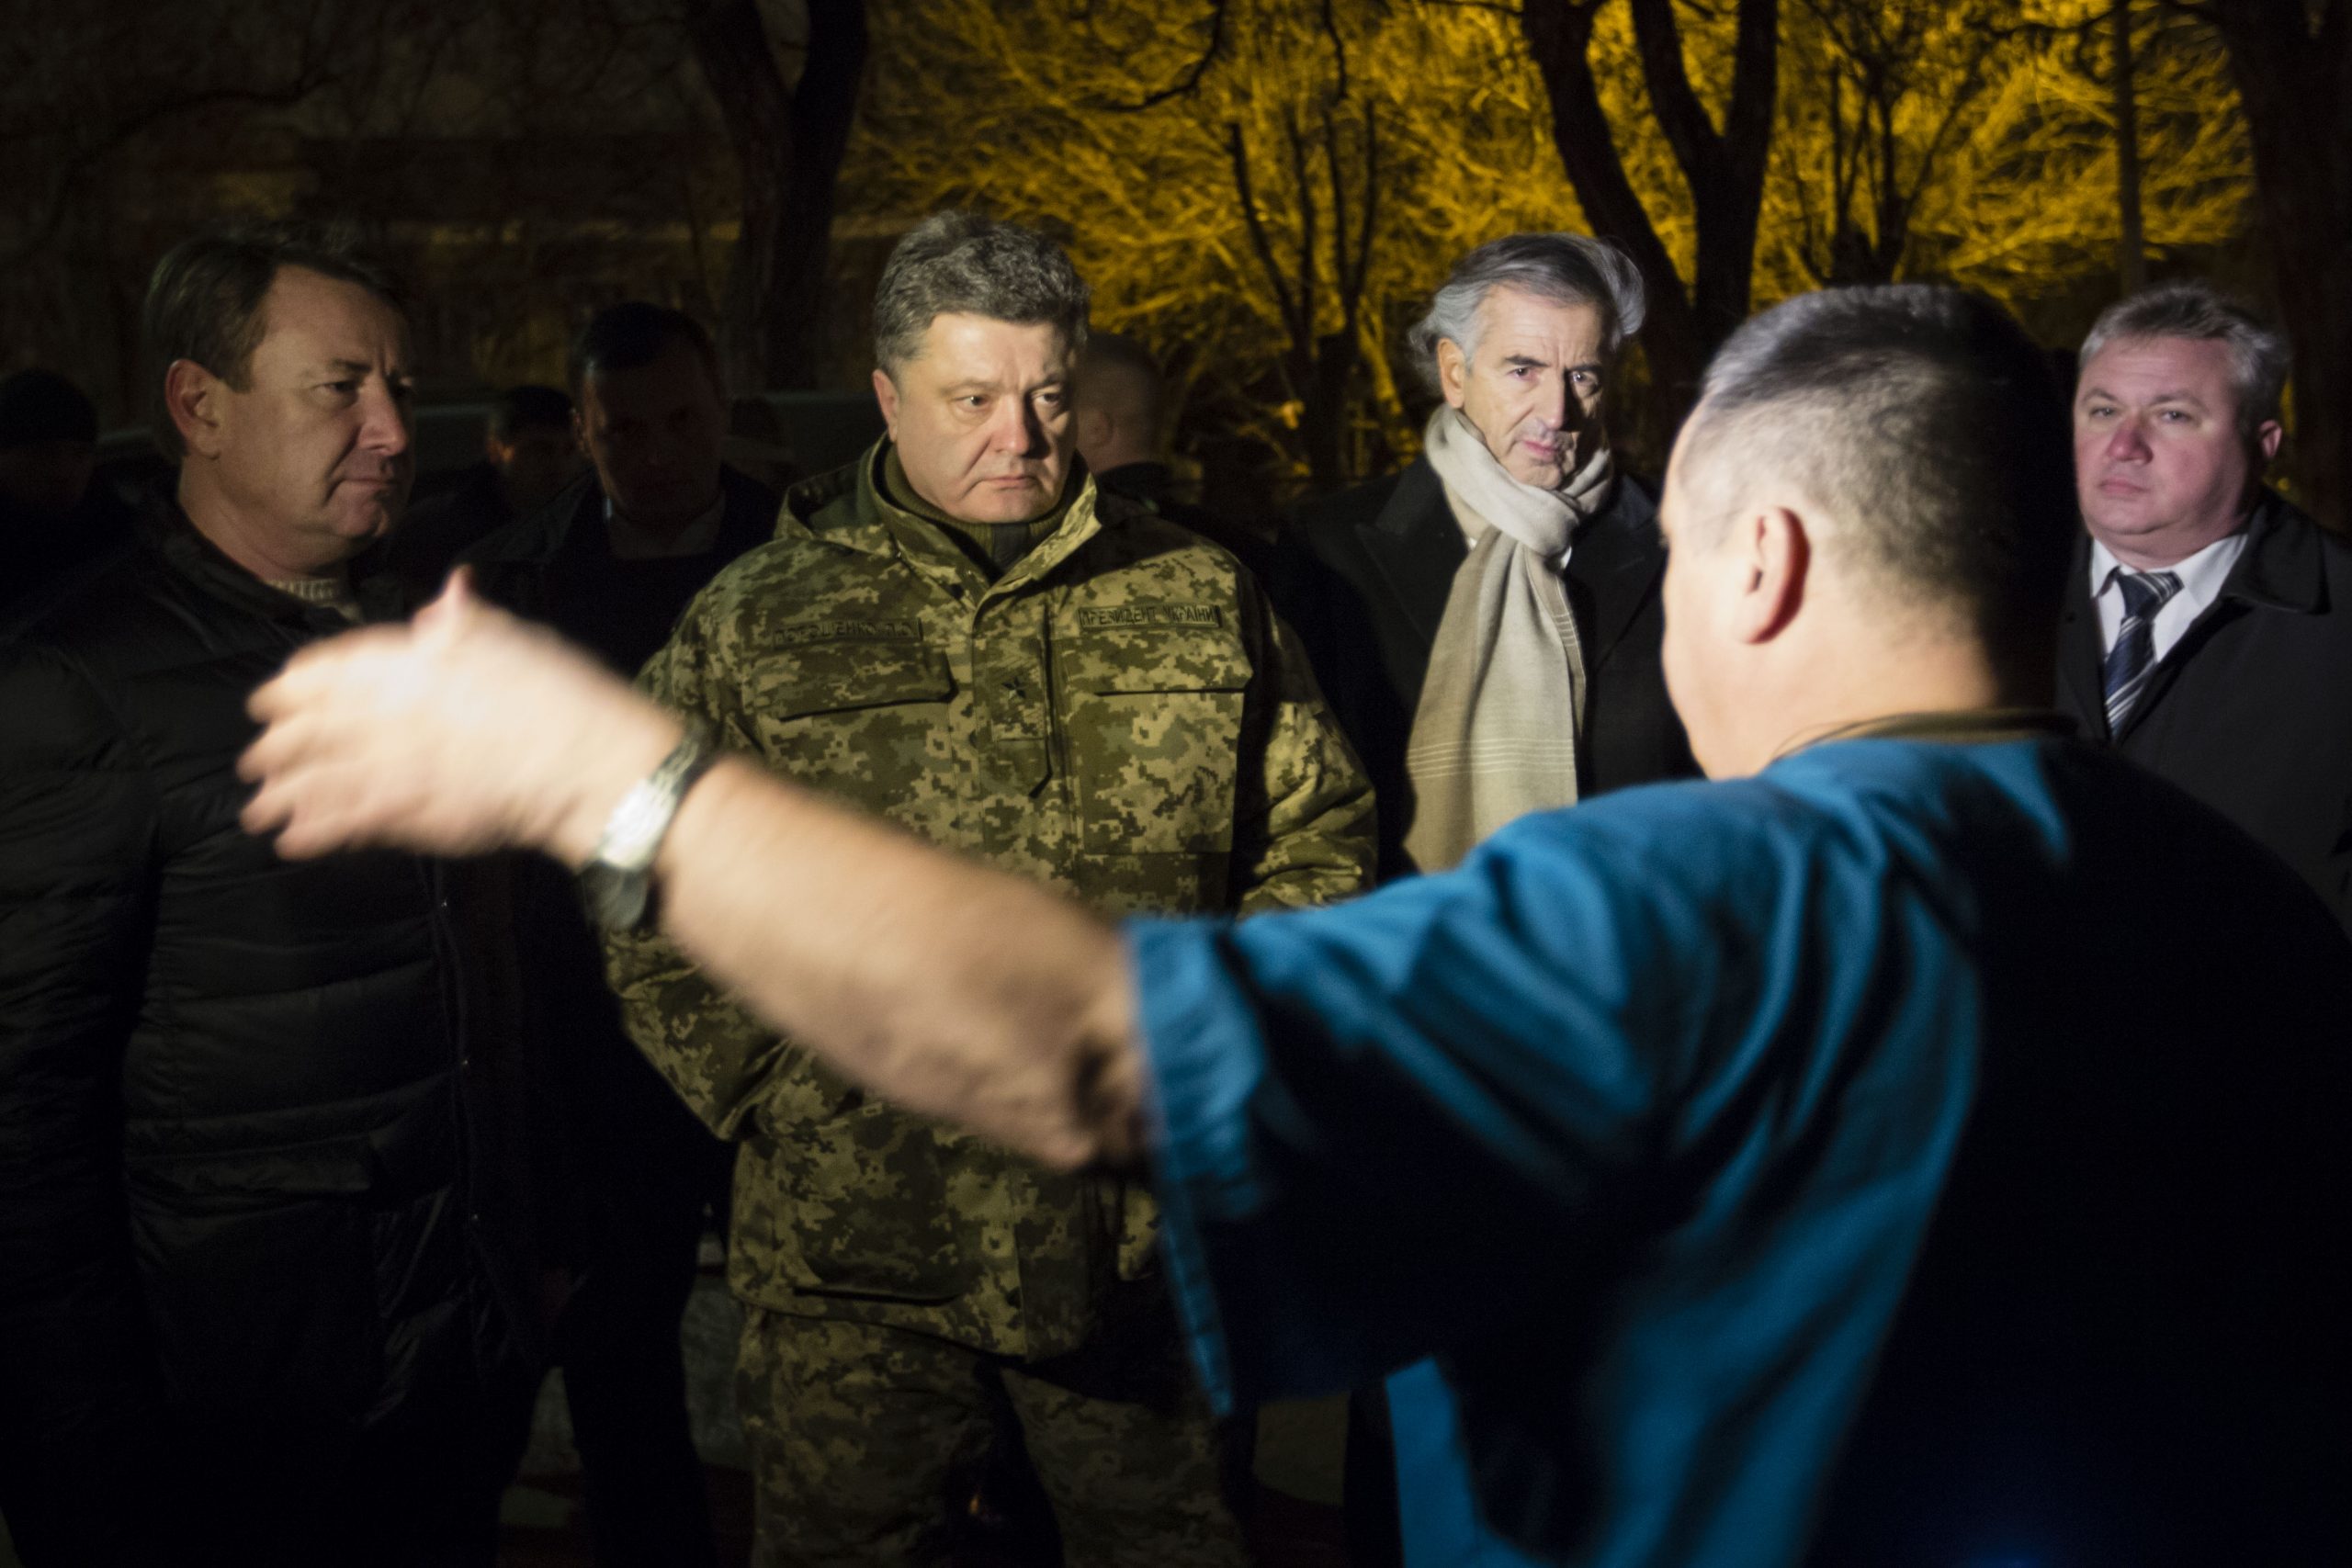 Bernard-Henri Lévy et Petro Porochenko, à Kramatorsk, la nuit, écoutent un homme qui parle.